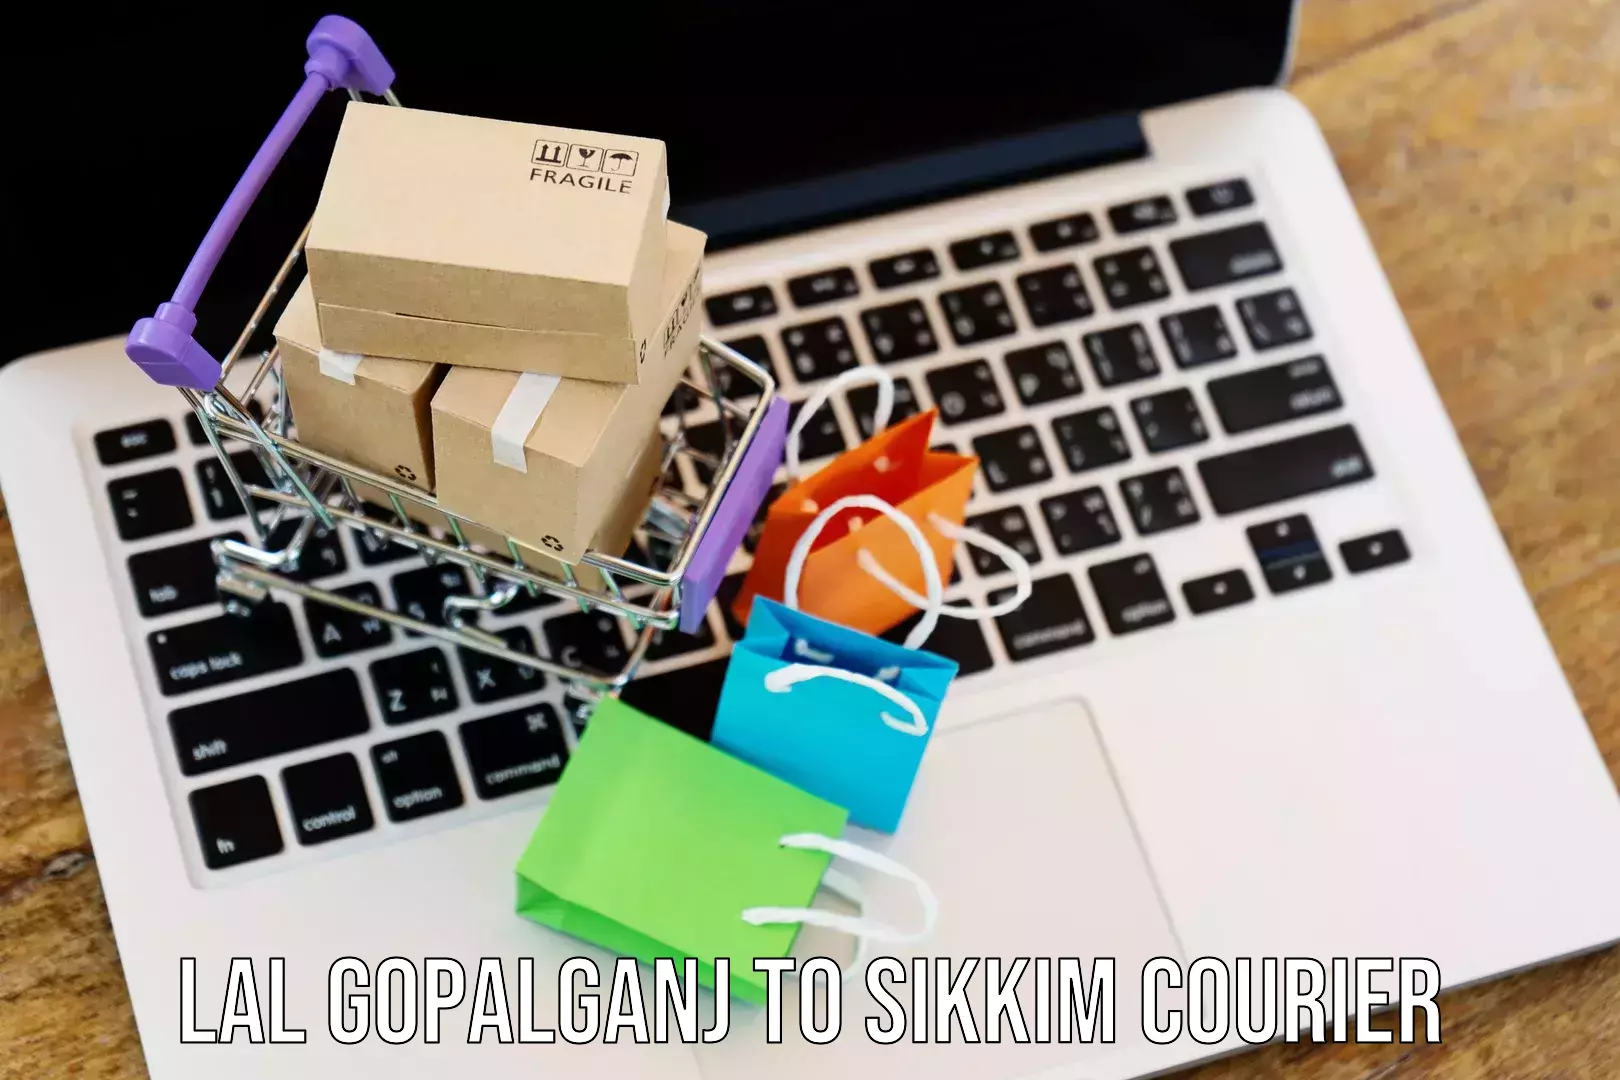 Digital courier platforms Lal Gopalganj to East Sikkim